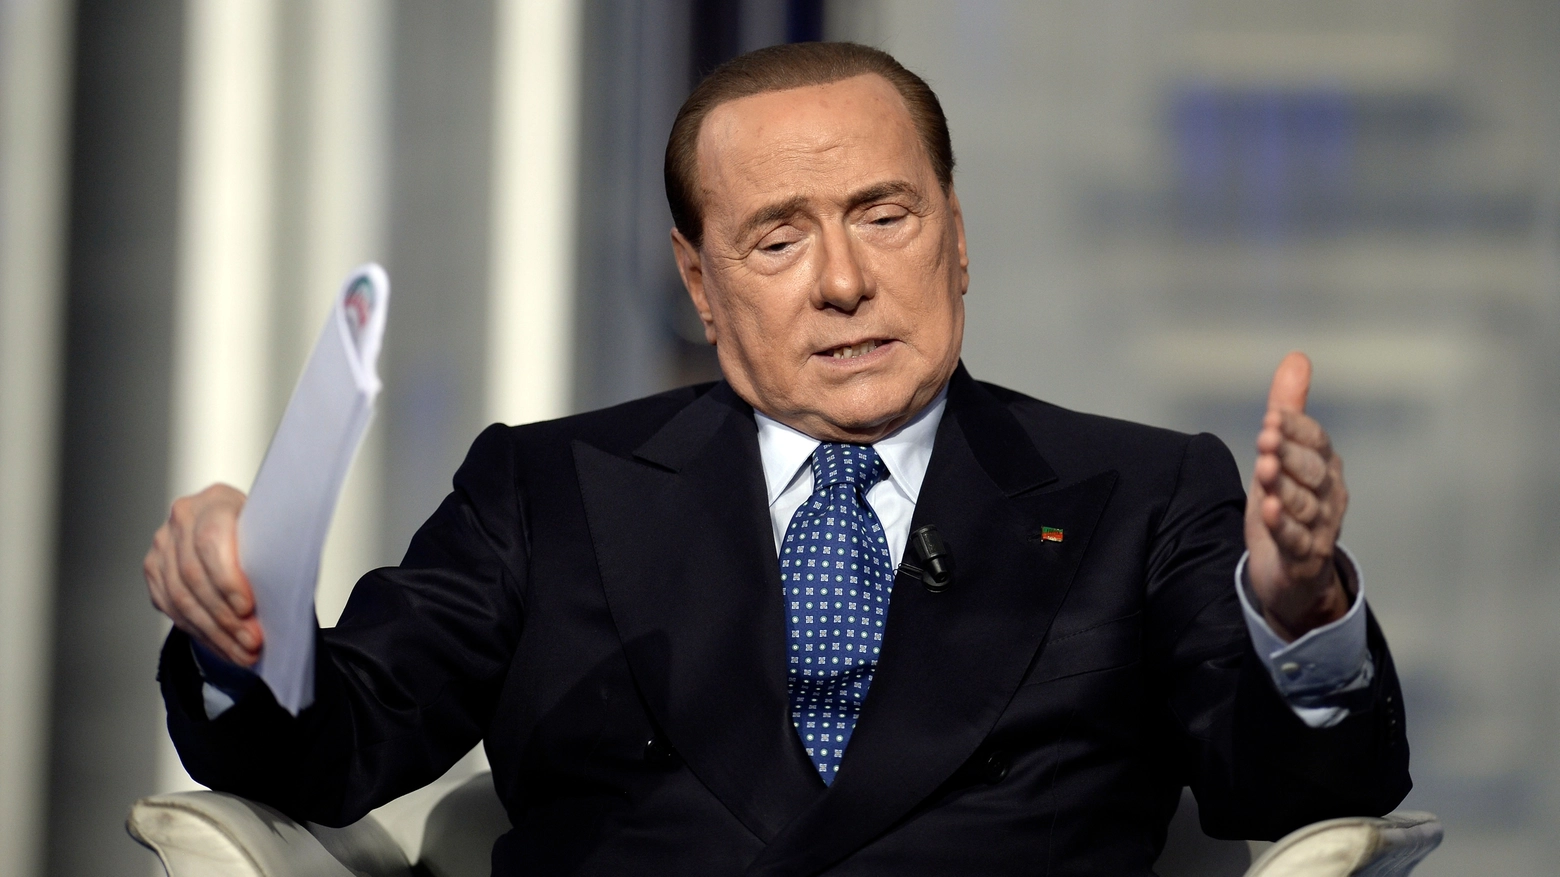 Silvio Berlusconi (Imagoeconomica)